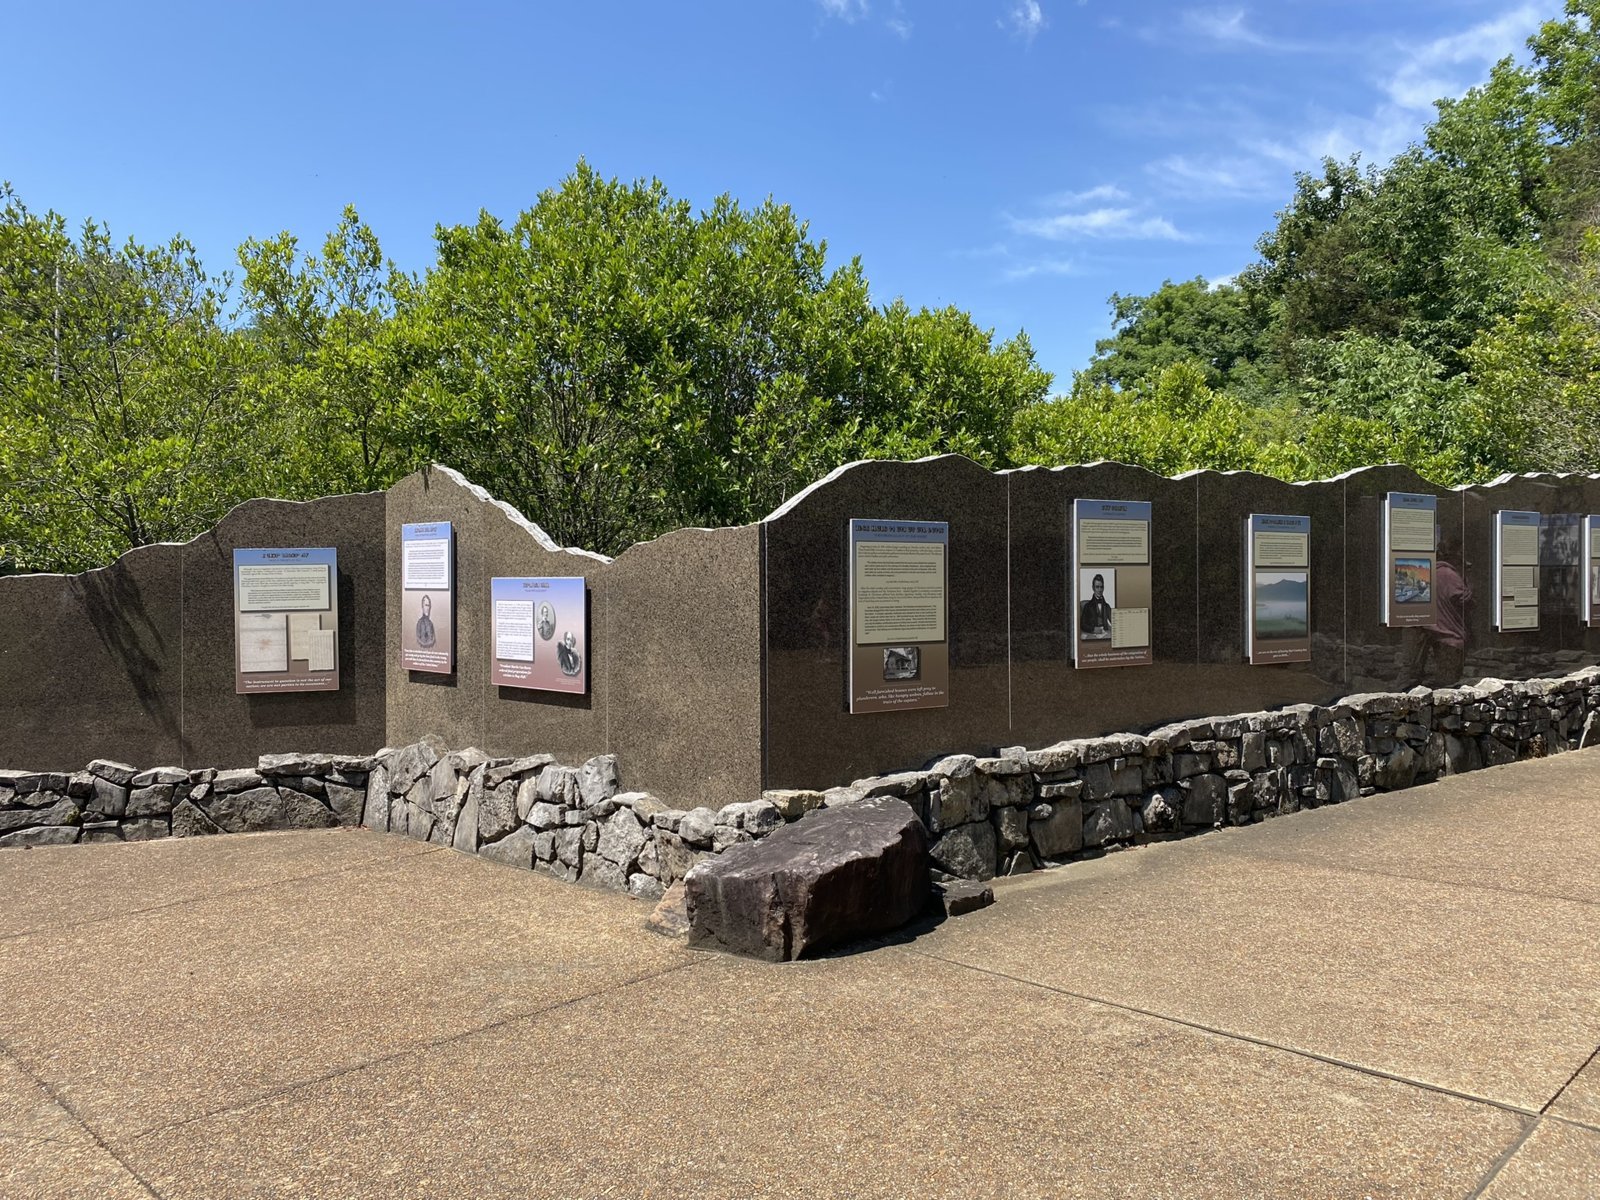 Cherokee Memorial am Trail of Tears - auch das gehört zur Geschichte der USA